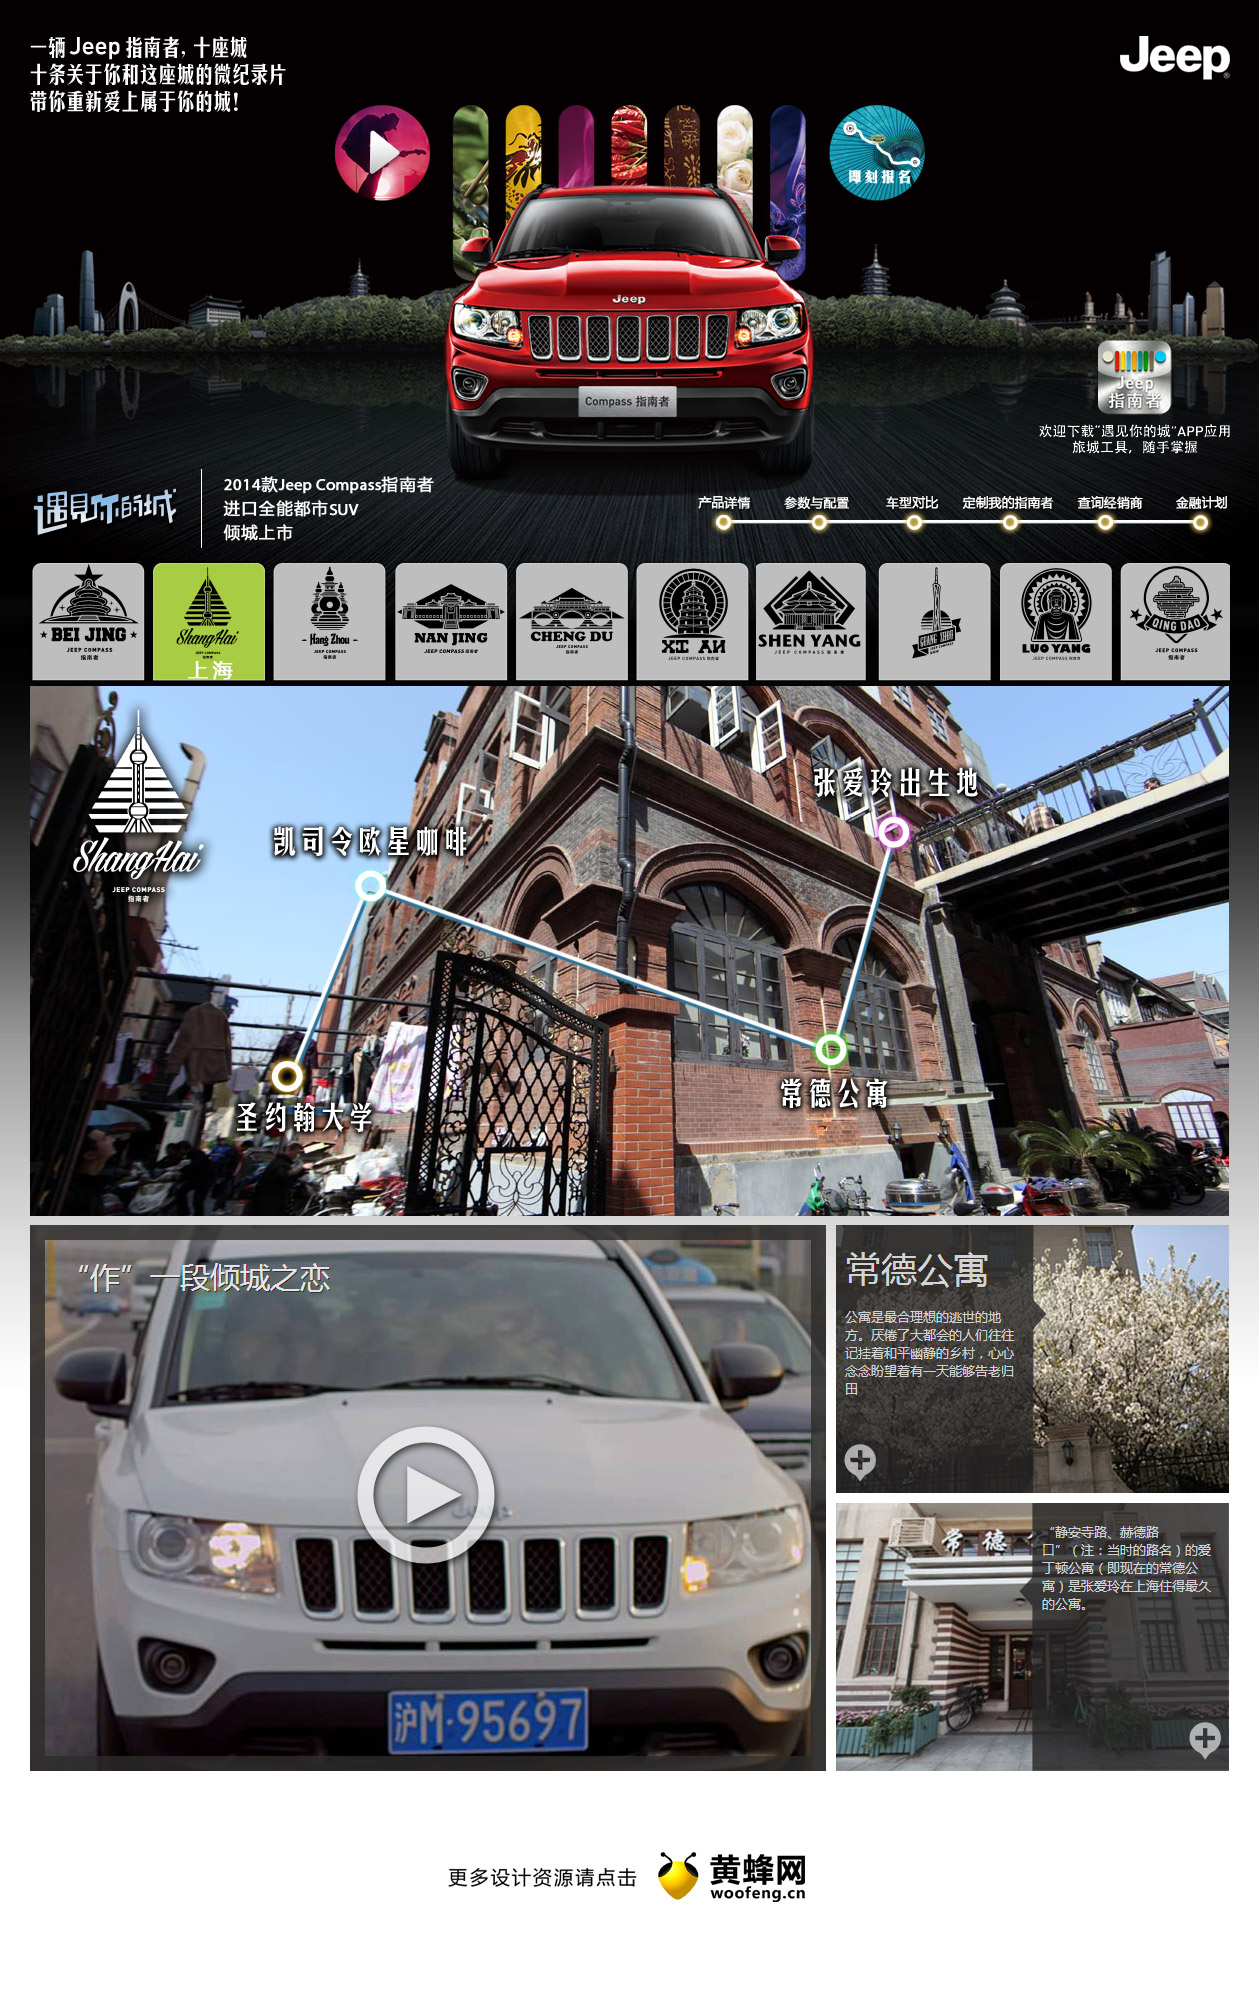 2014款Jeep指南者上市 遇见你的城，来源自黄蜂网https://woofeng.cn/